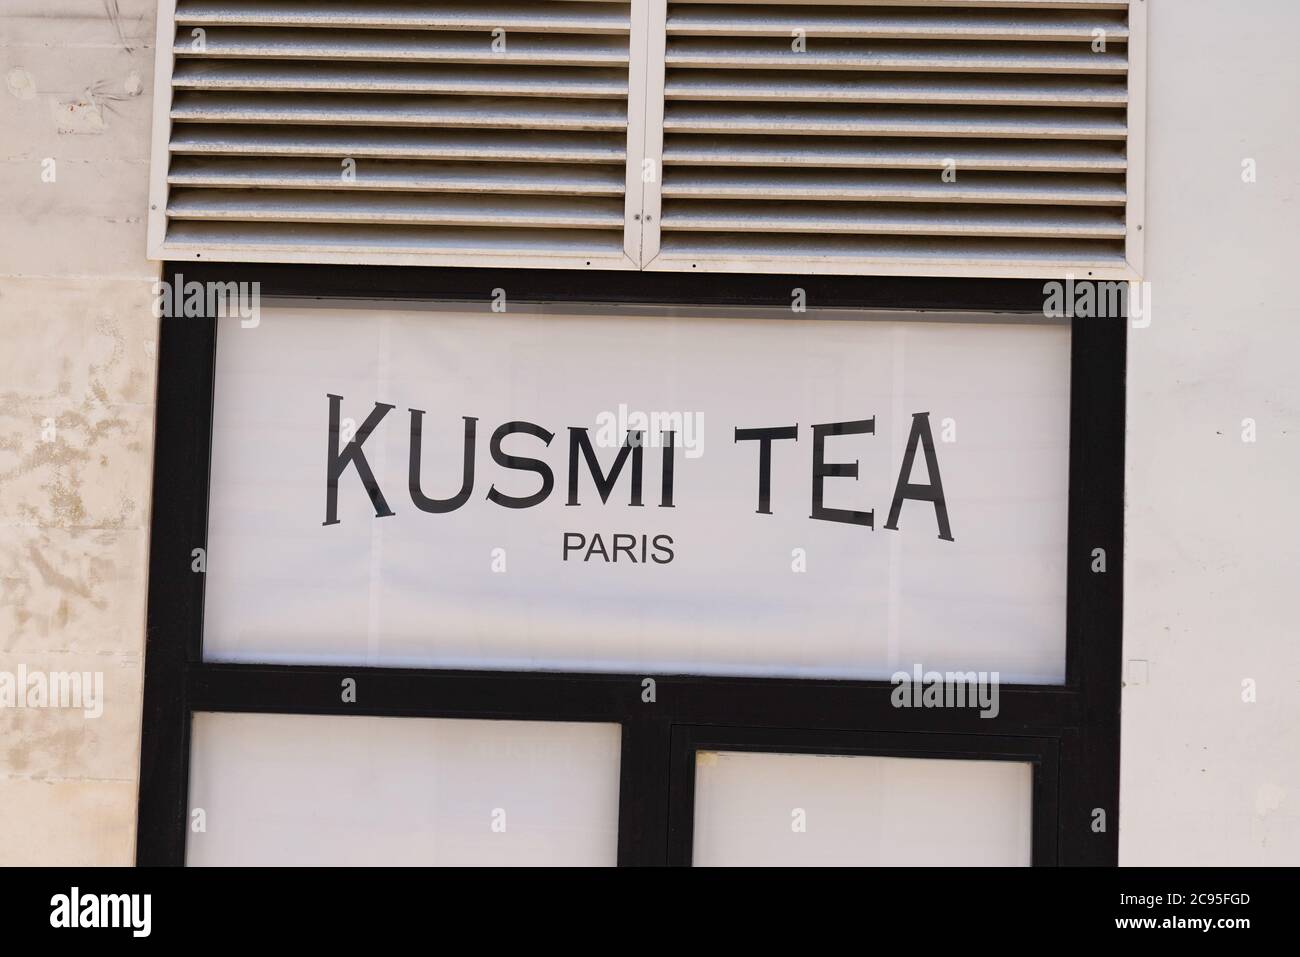 Kusmi tea hi-res stock photography and images - Alamy